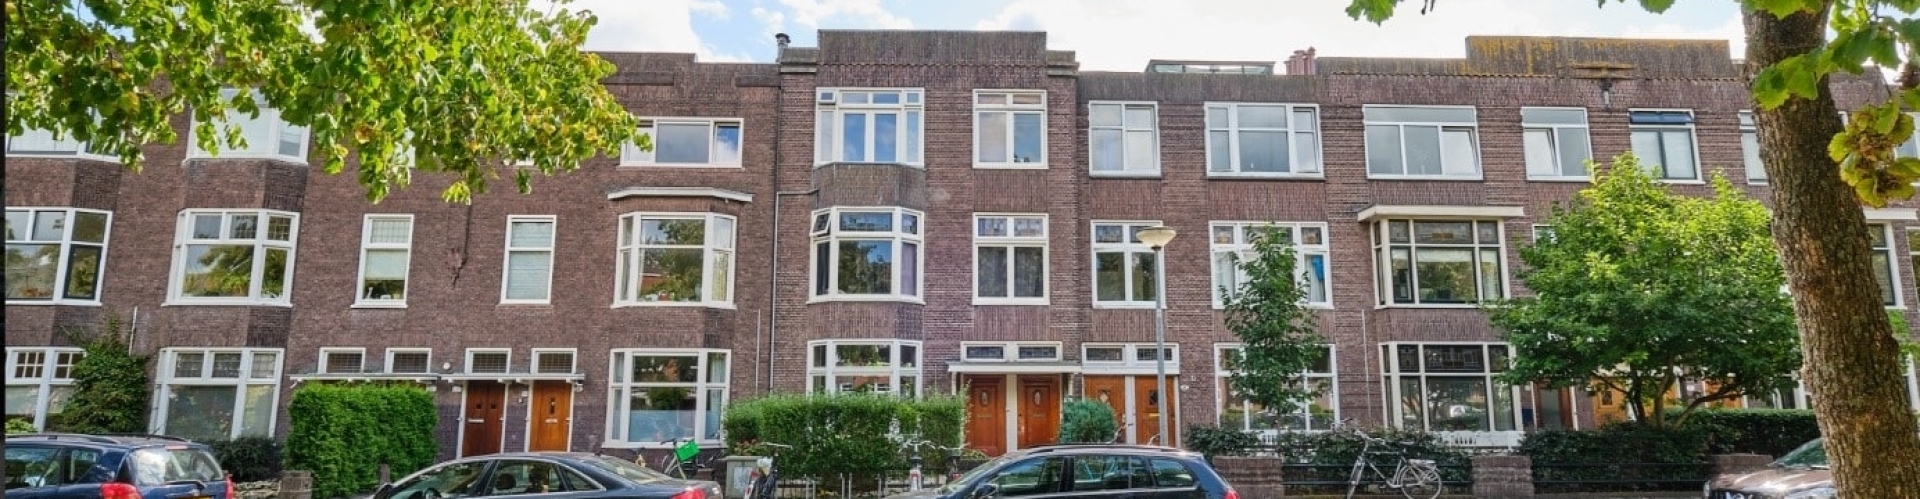 bevolking Bewust worden Onnodig Studentenhuis verkopen Nijmegen? Studentenwoning te koop zetten